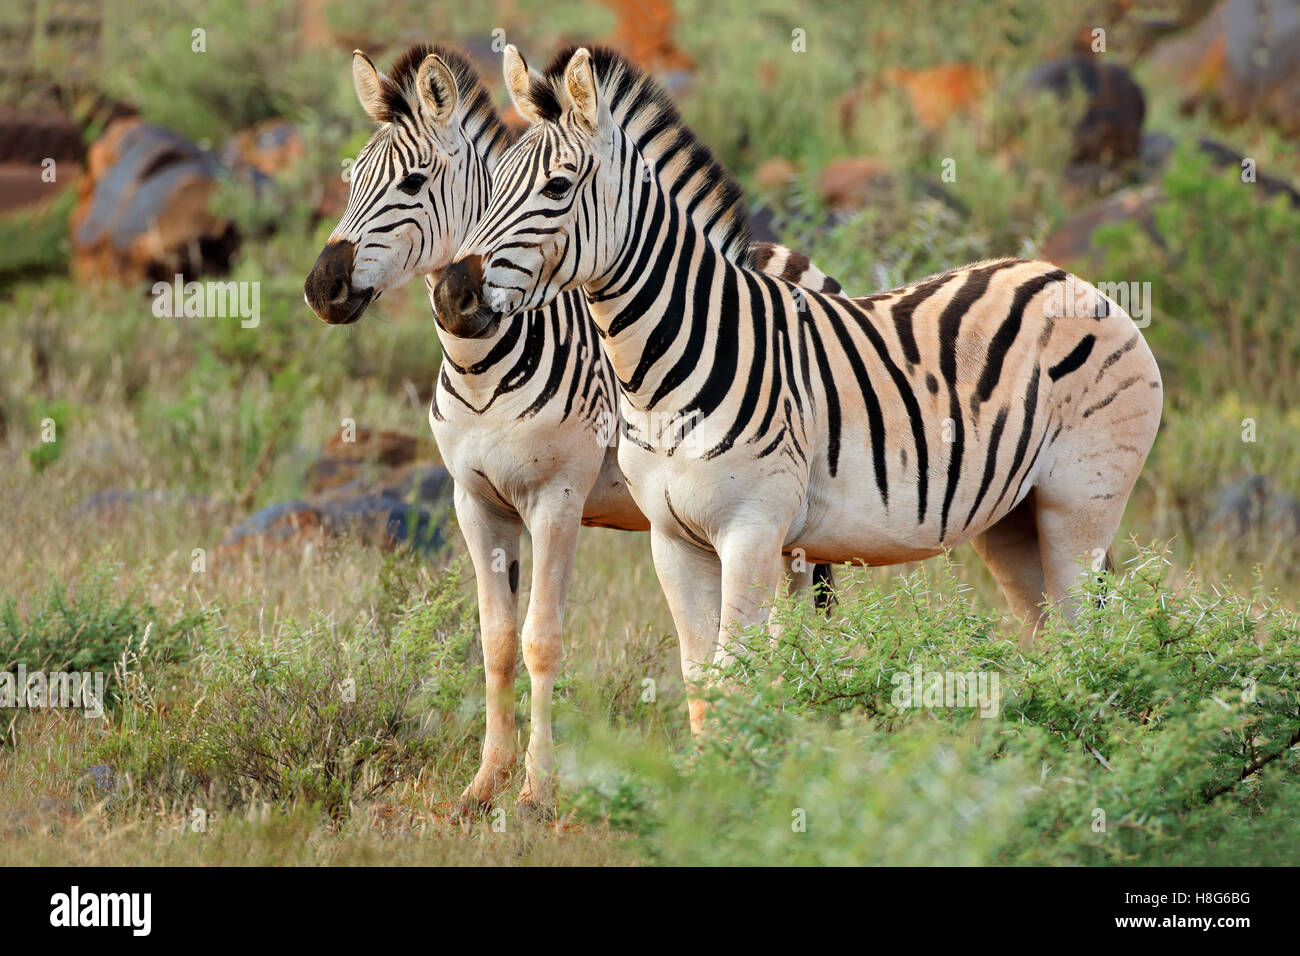 Deux plaines (Burchell) zèbres (Equus burchelli) dans l'habitat naturel, l'Afrique du Sud Banque D'Images